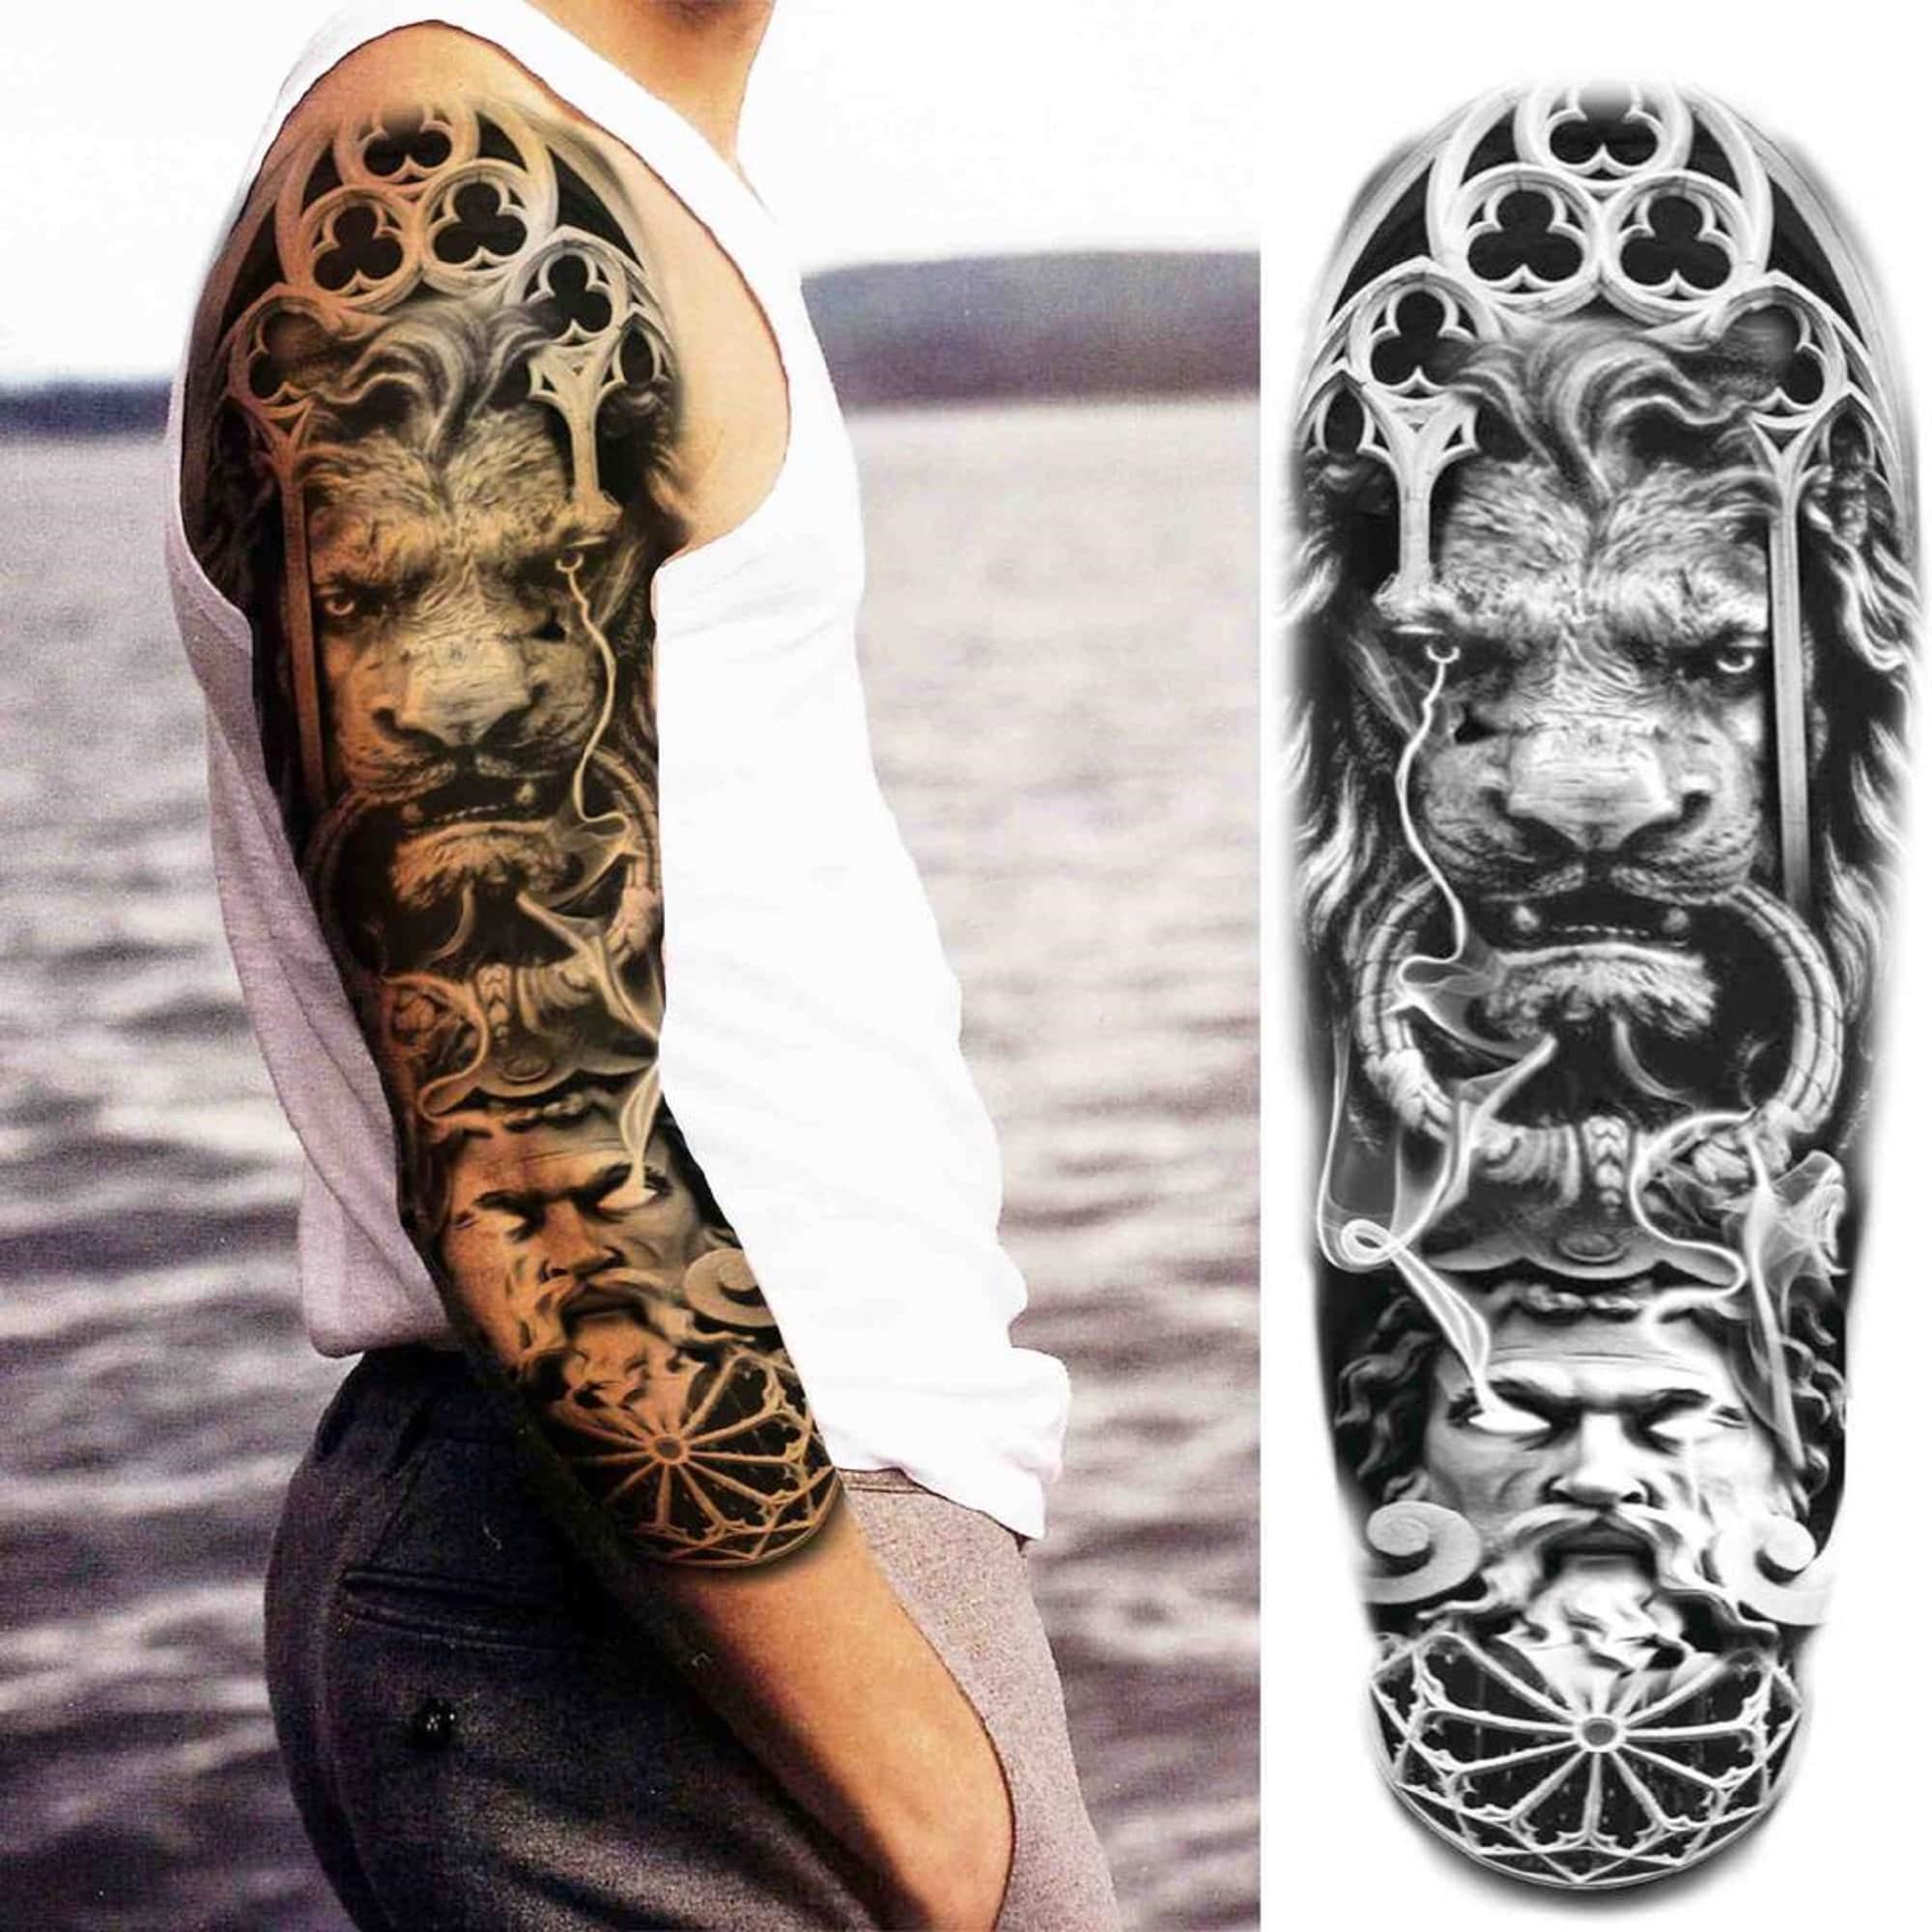 Full Arm Sleeve Temporary Tattoo Zeus Tattoos Tribal Lion - Etsy